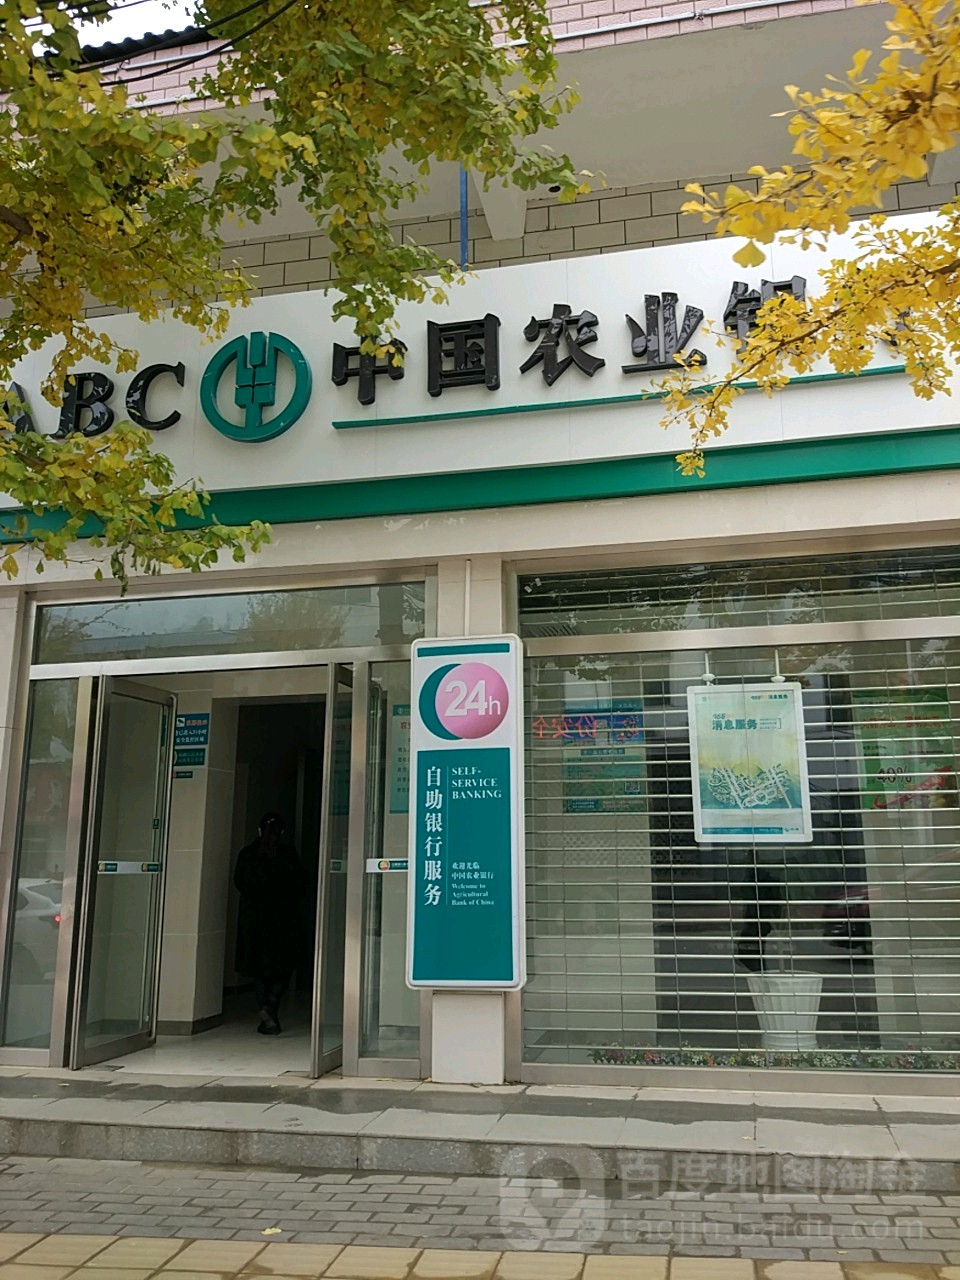 中國農業銀行24小時自助銀行(城郊儲蓄所)